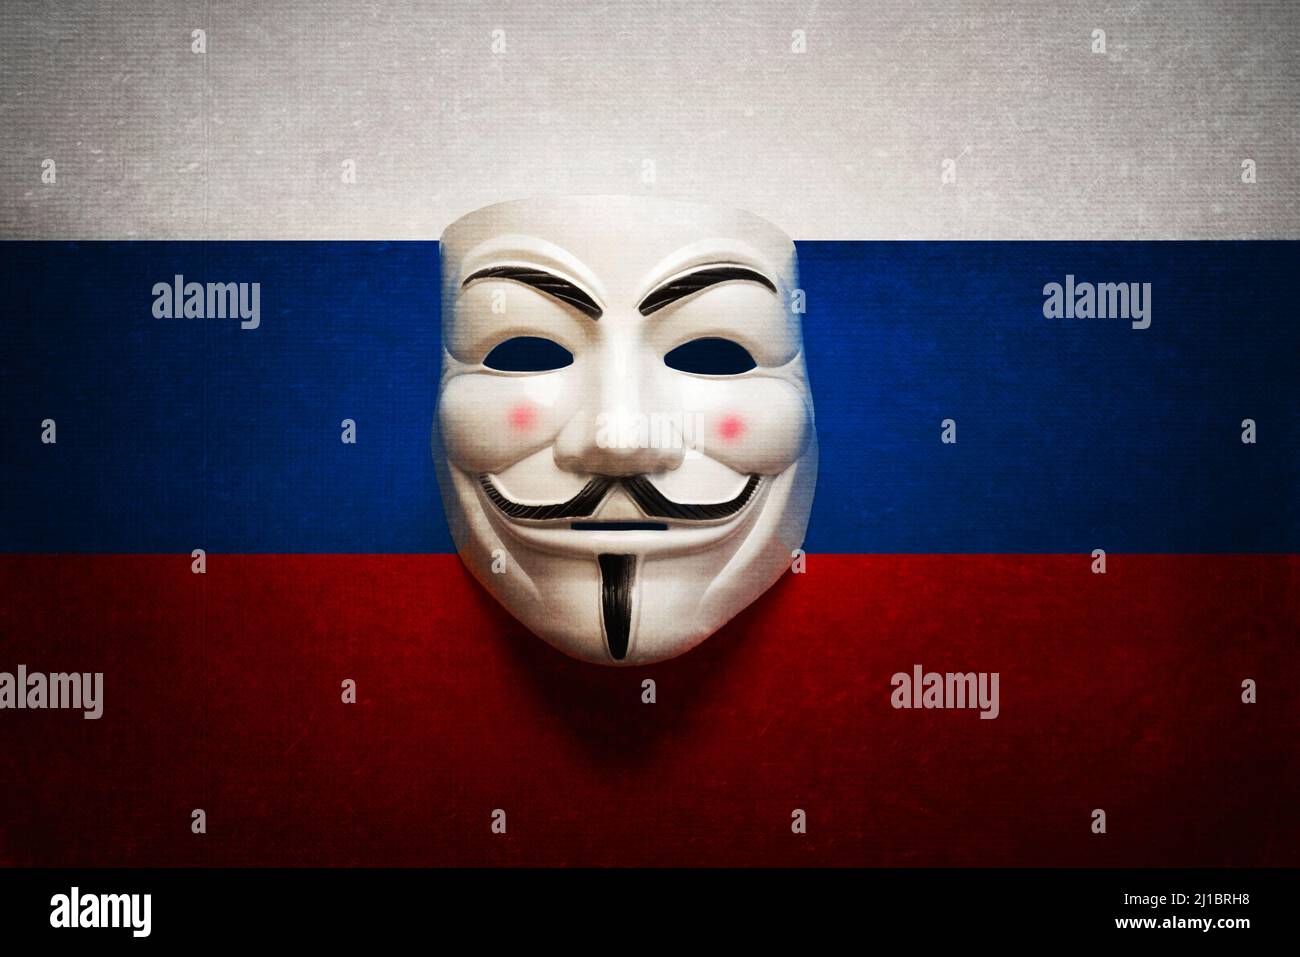 Maschera Hacker Immagini e Fotos Stock - Alamy